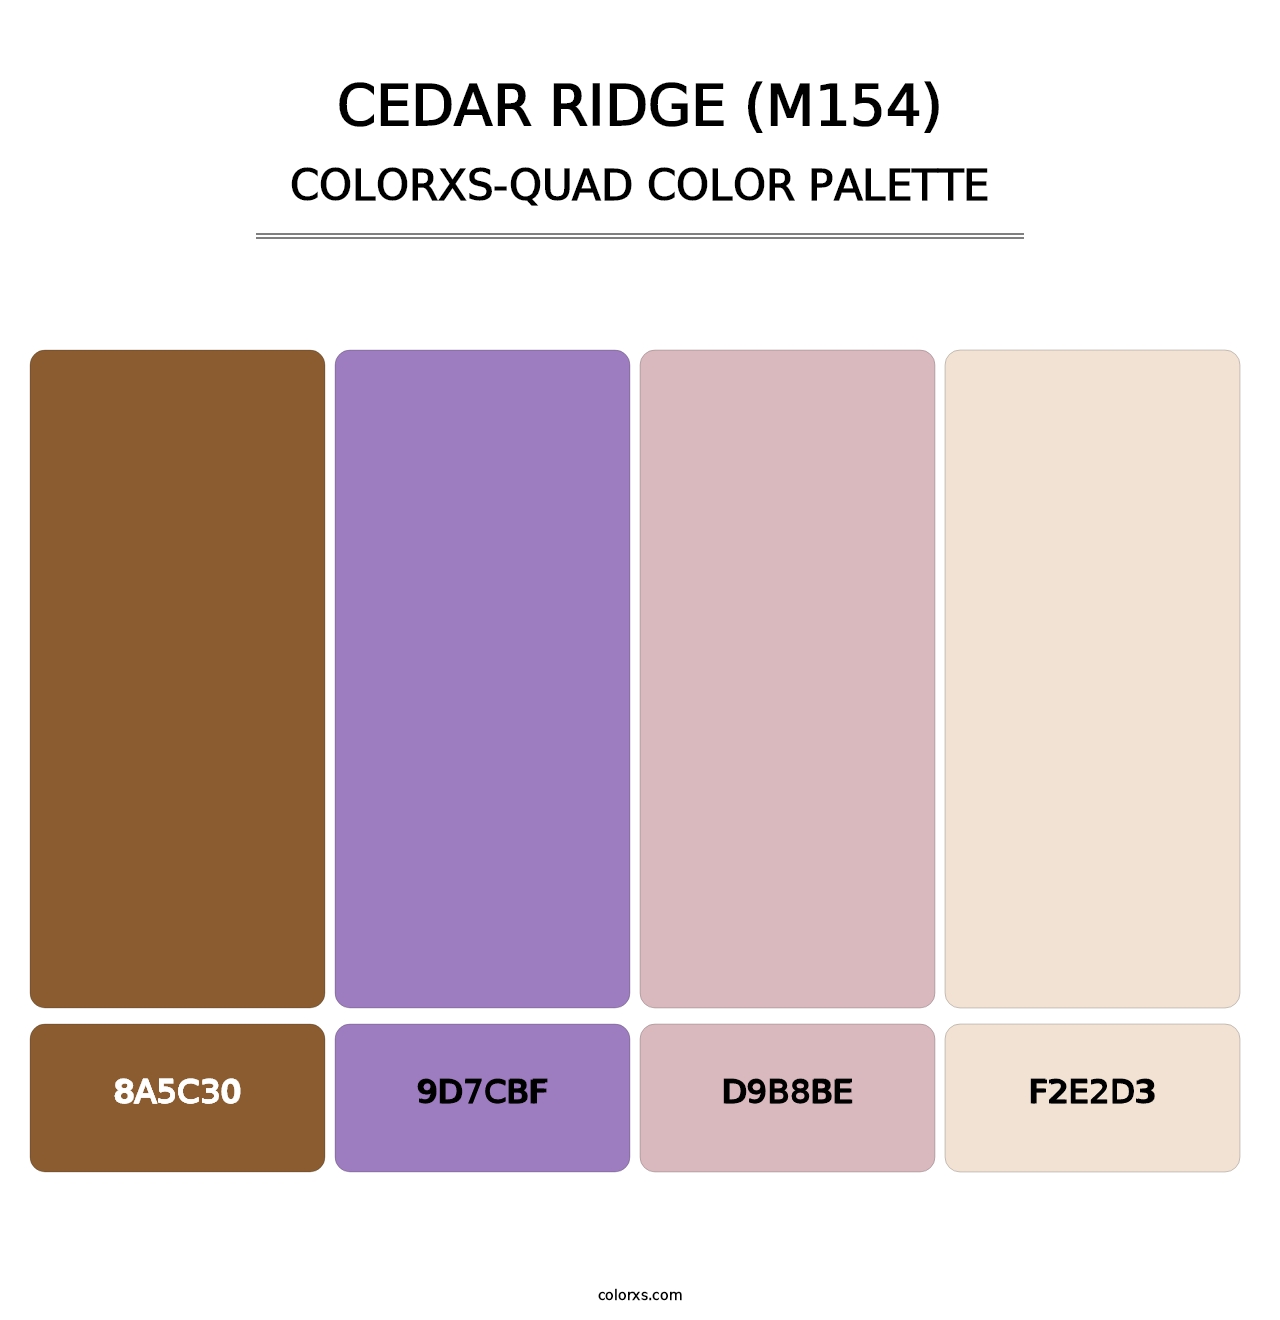 Cedar Ridge (M154) - Colorxs Quad Palette